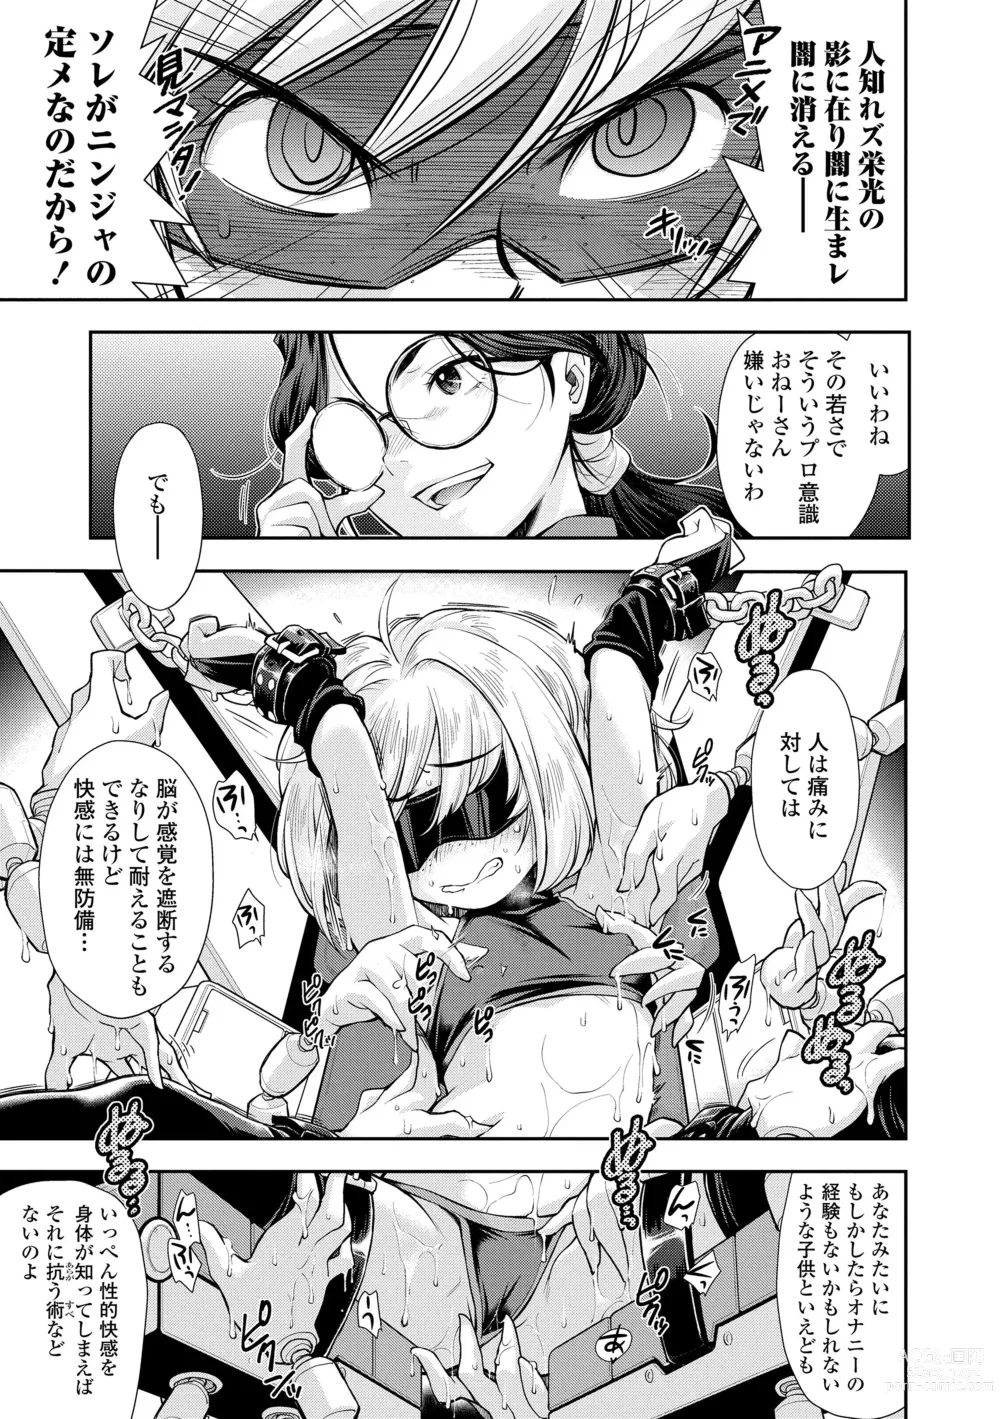 Page 175 of manga Onnanoko wa Sono Yubi no Ugoki ni Yowain desu